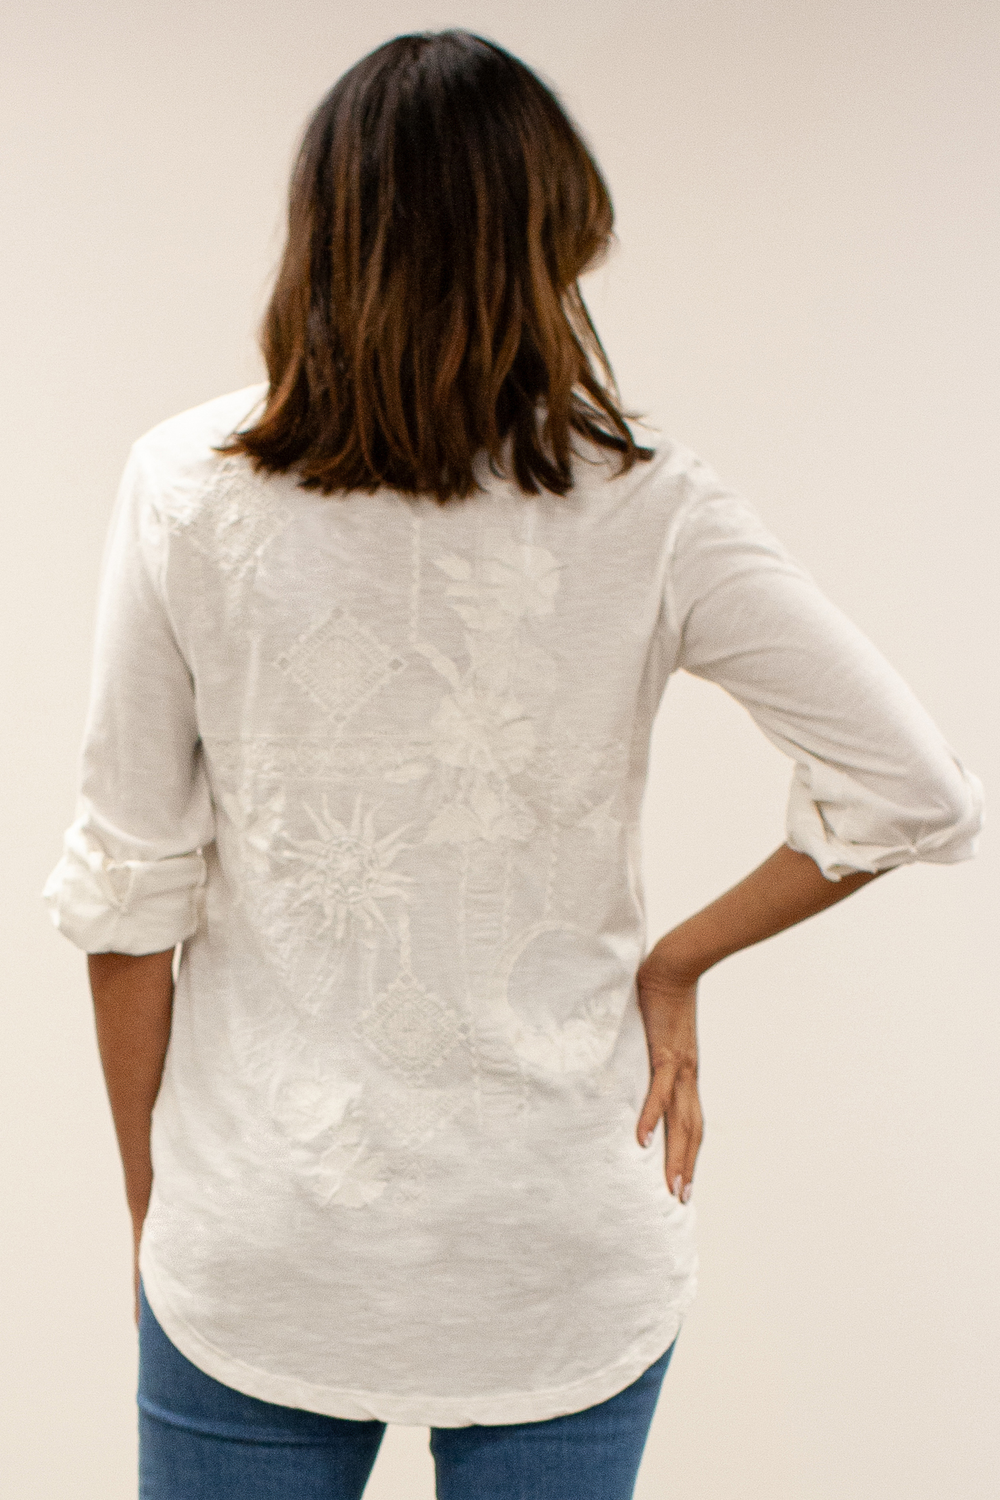 Caite Amara shirt, tonal embroidered